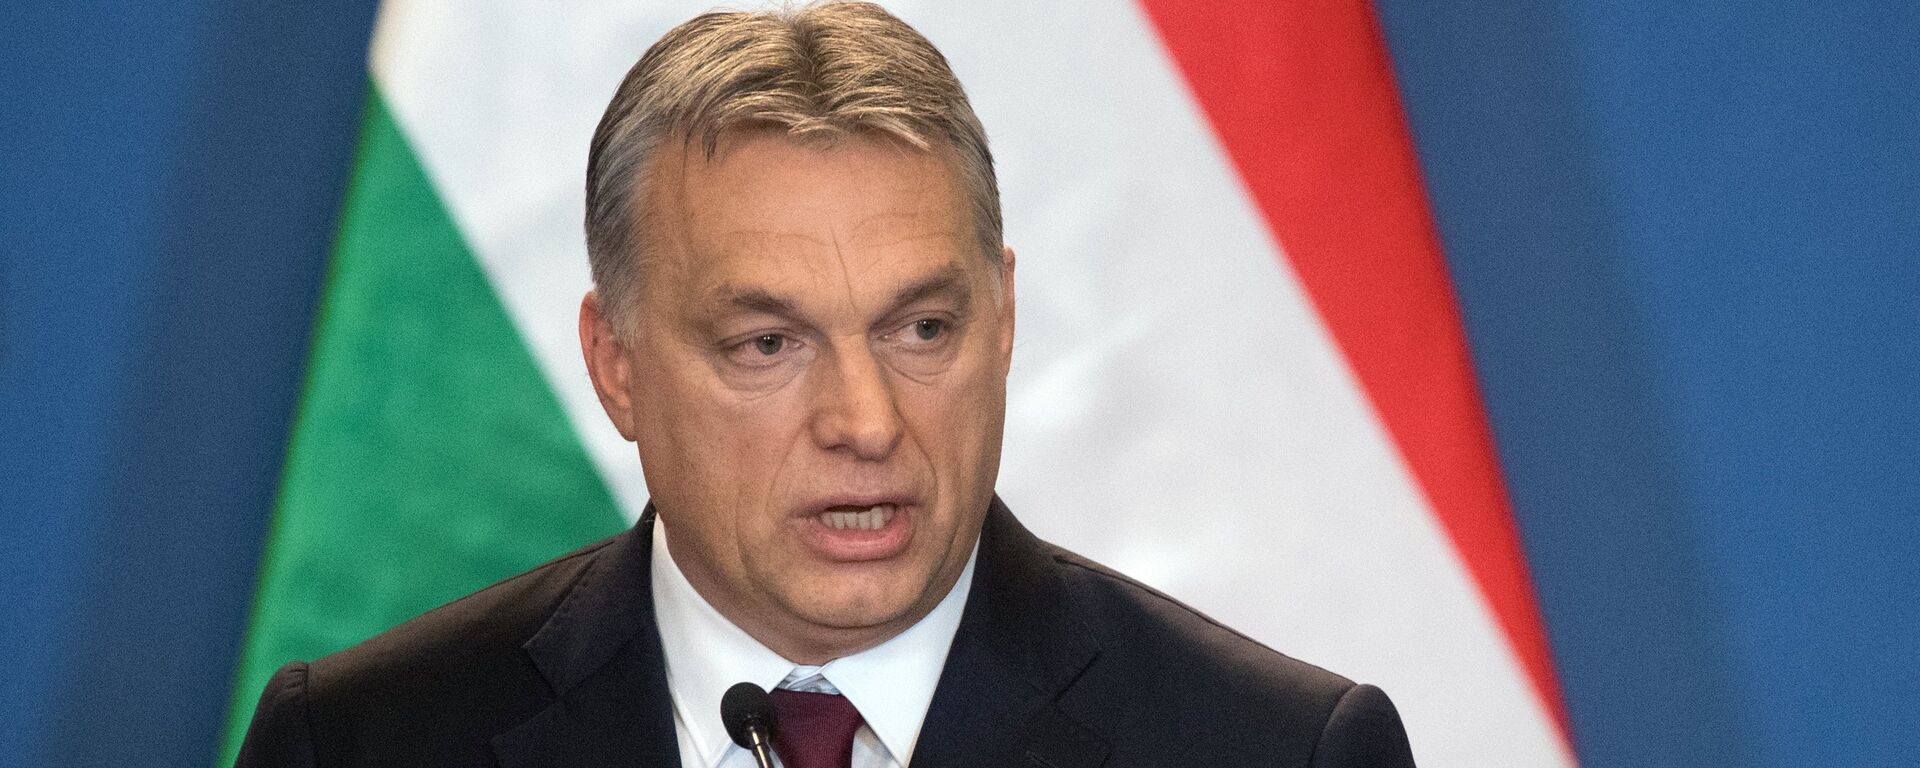 Ungārijas premjerministrs Viktors Orbans  - Sputnik Latvija, 1920, 05.07.2021